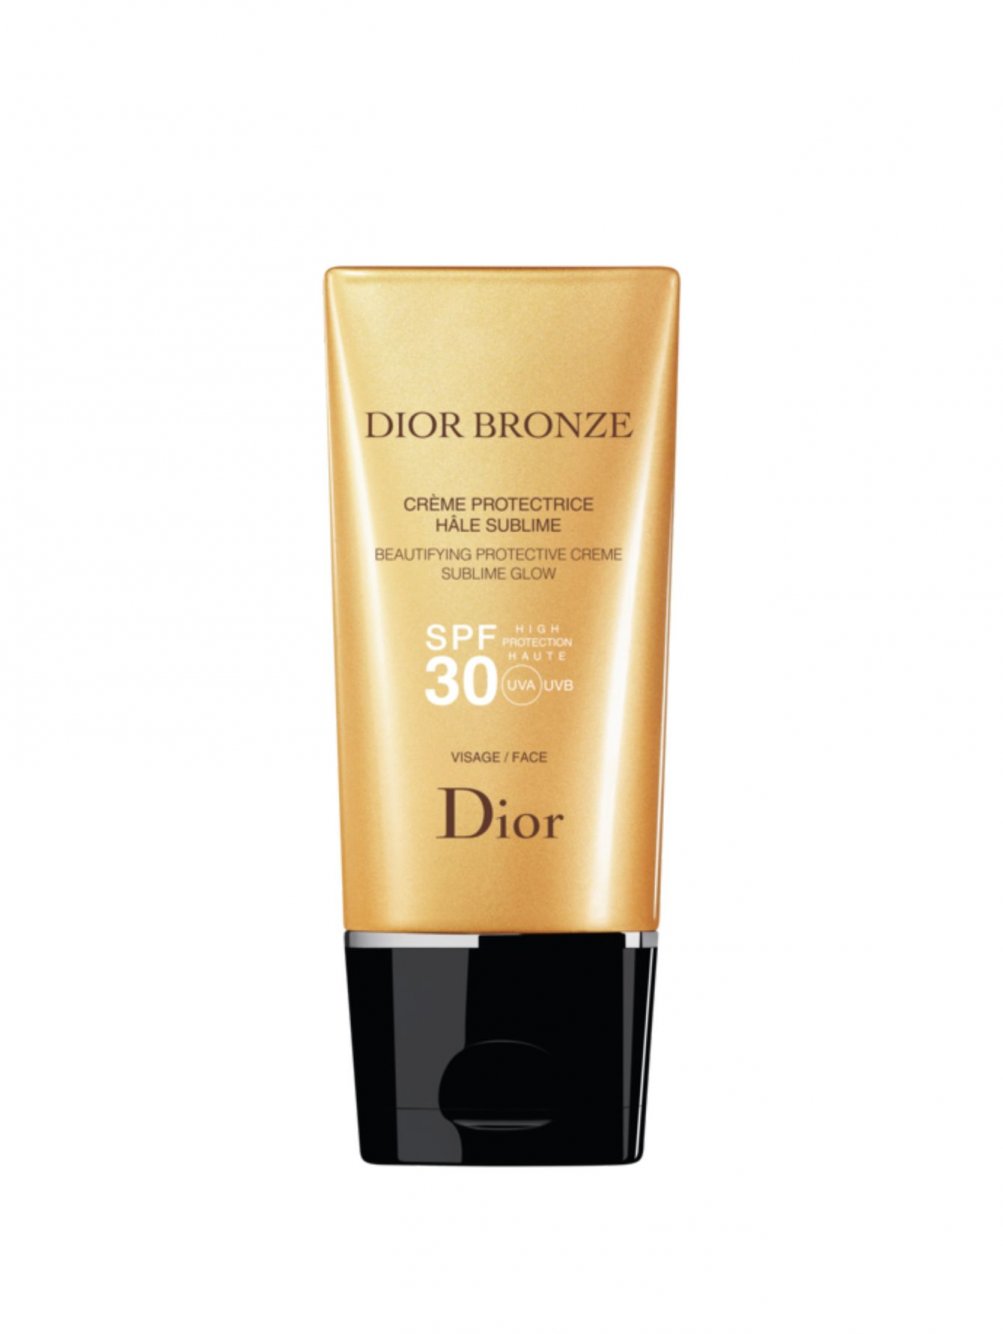 dior bronze 30